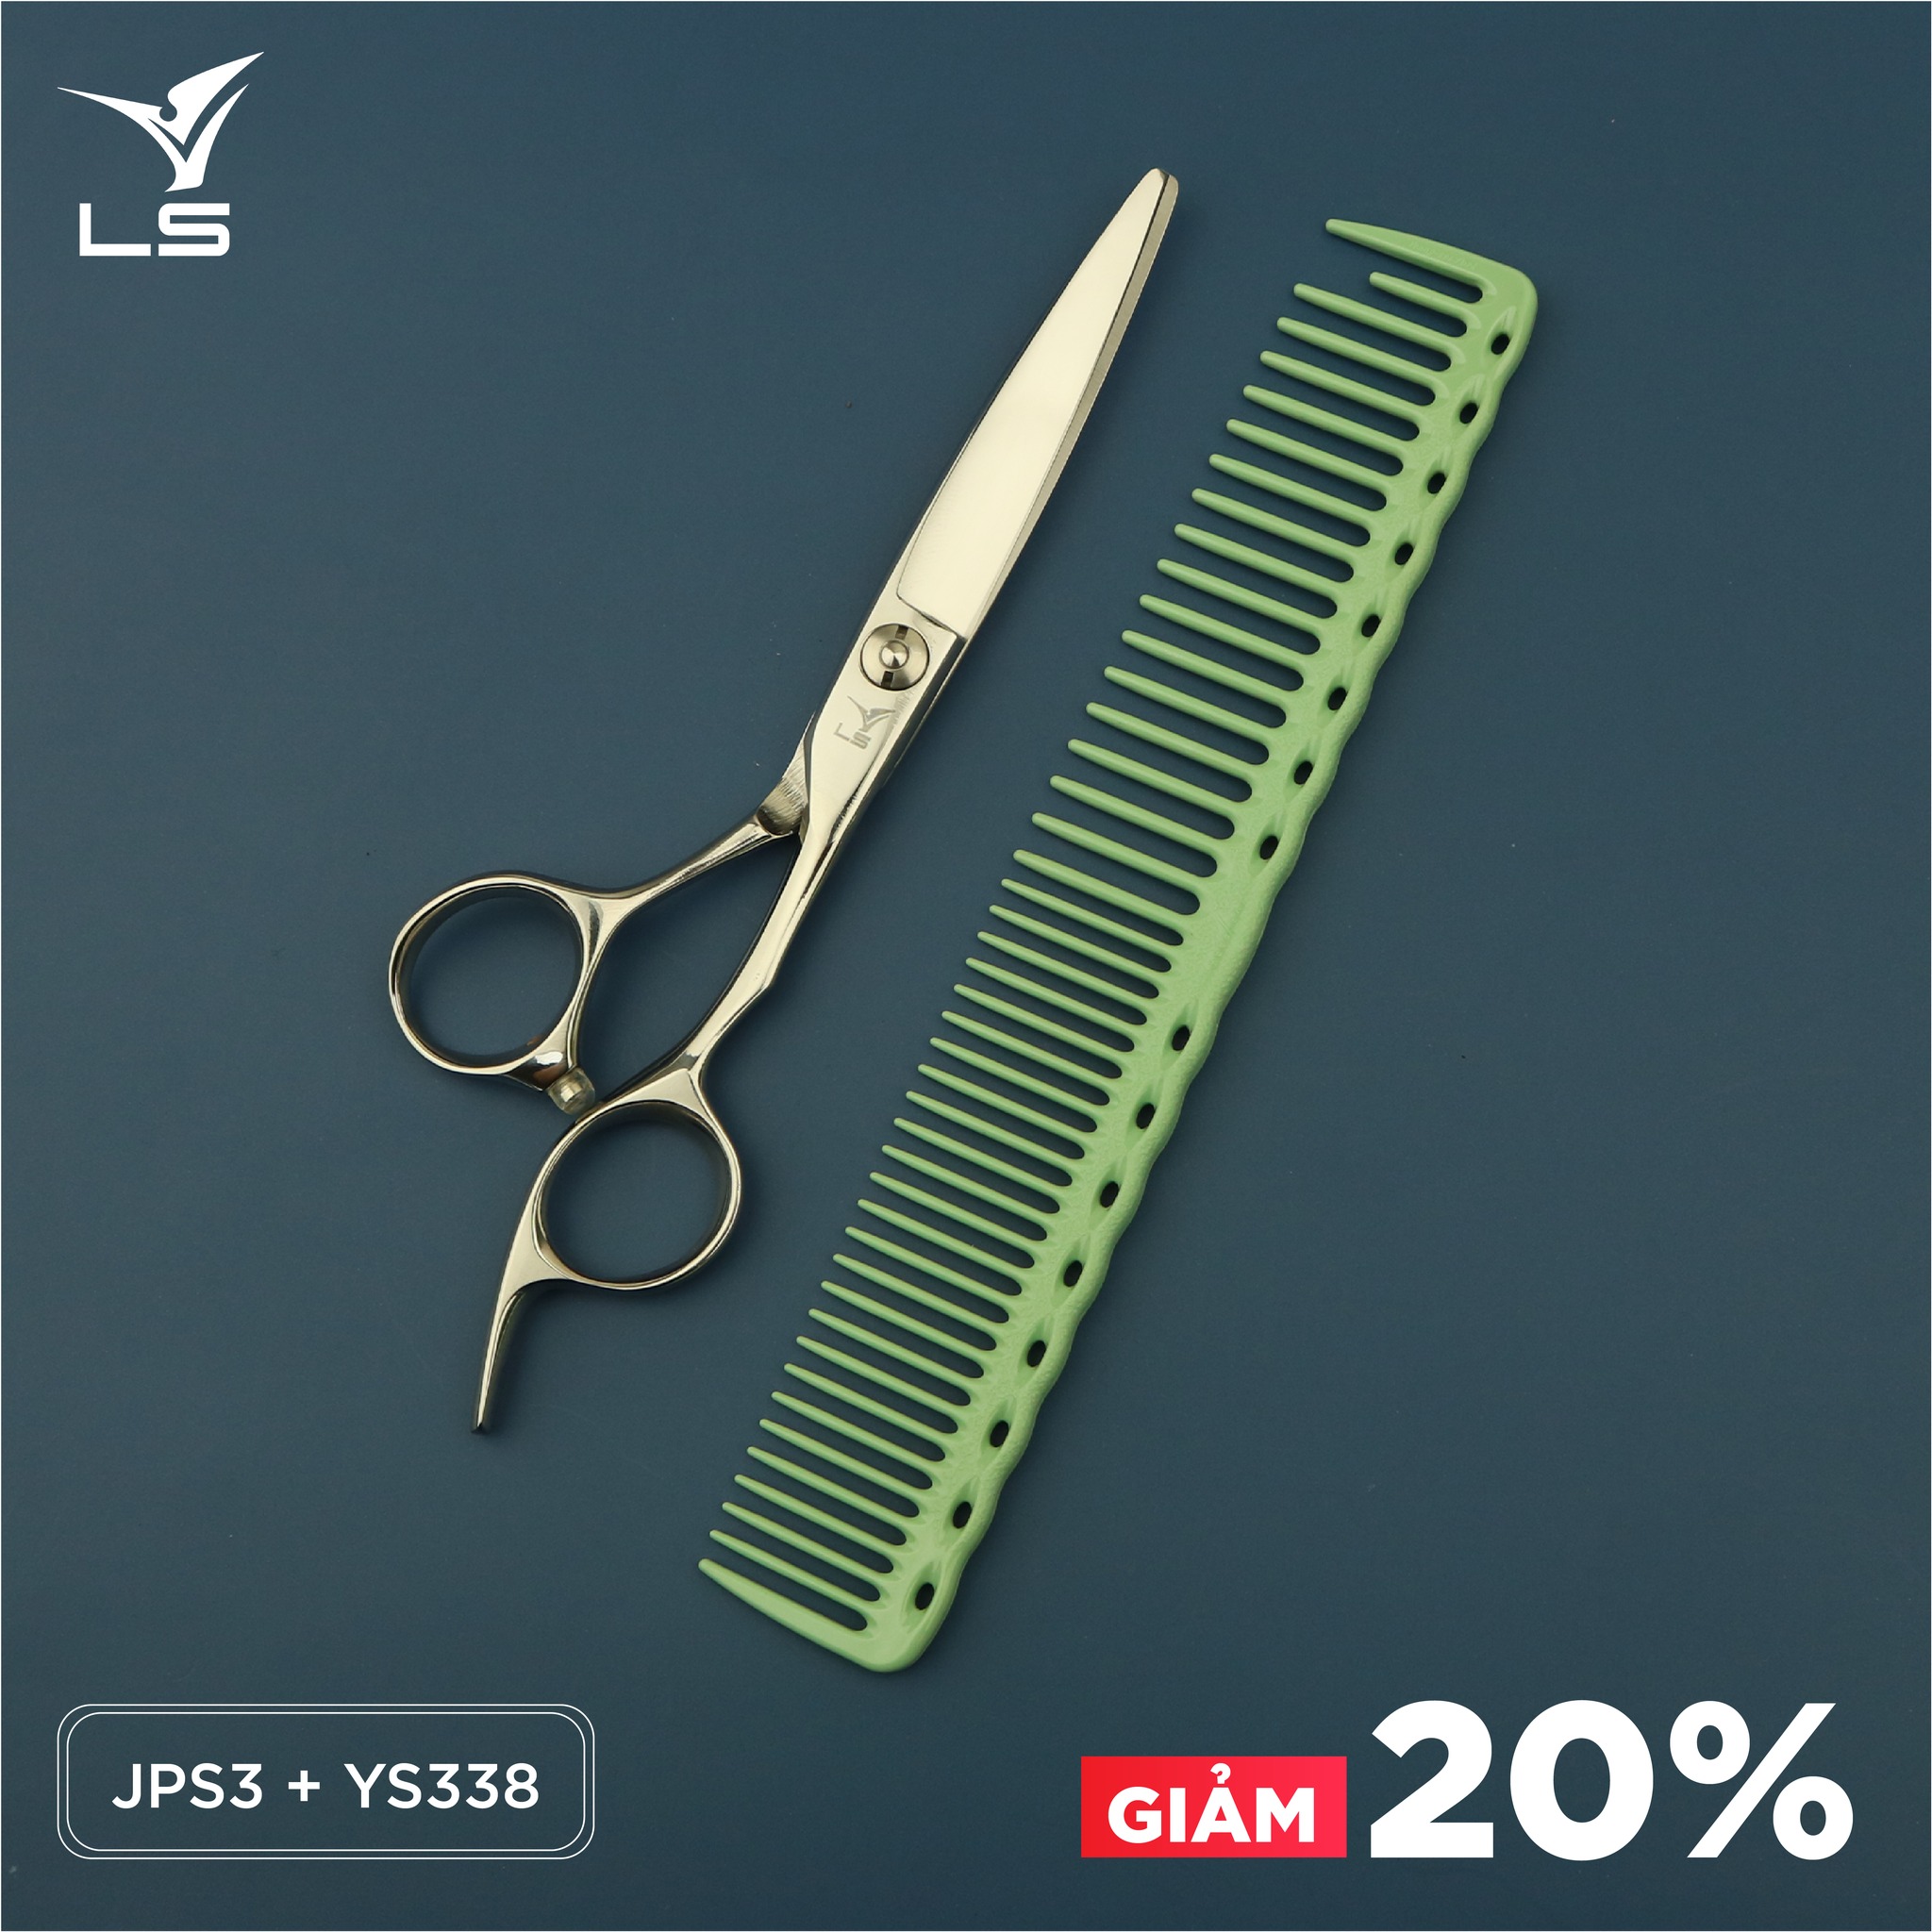 Kéo cắt tóc VLS được sản xuất bằng thép Nhật tốt